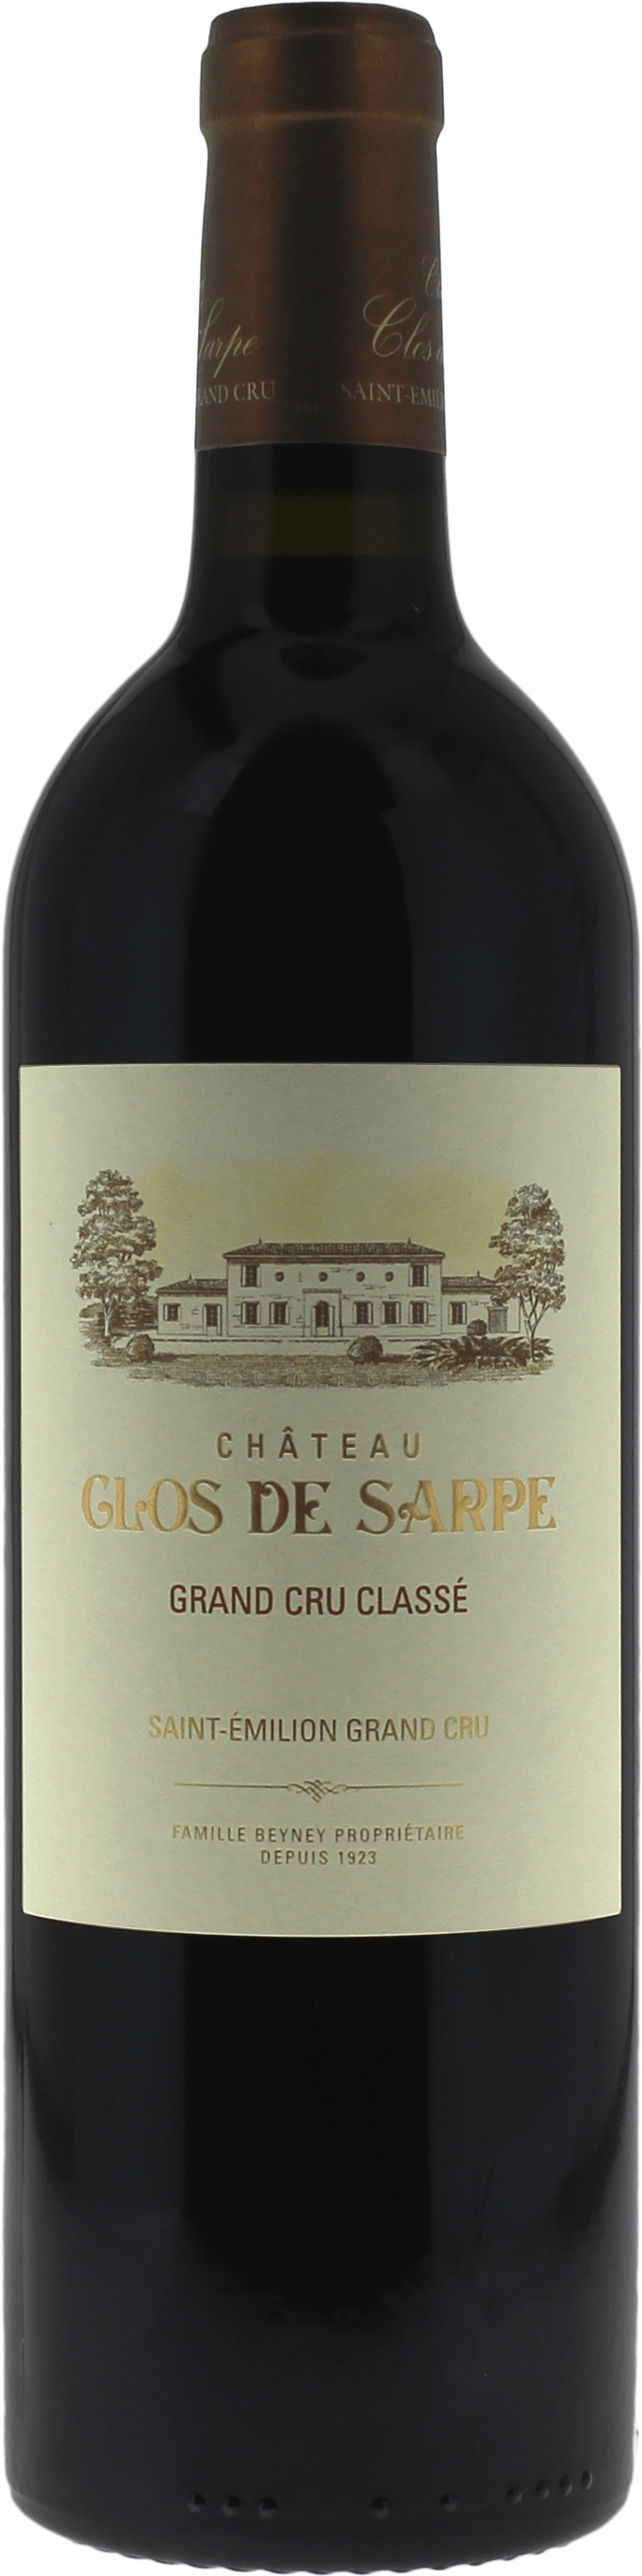 Clos de sarpe 2020 Grand Cru Class Saint-Emilion, Bordeaux rouge